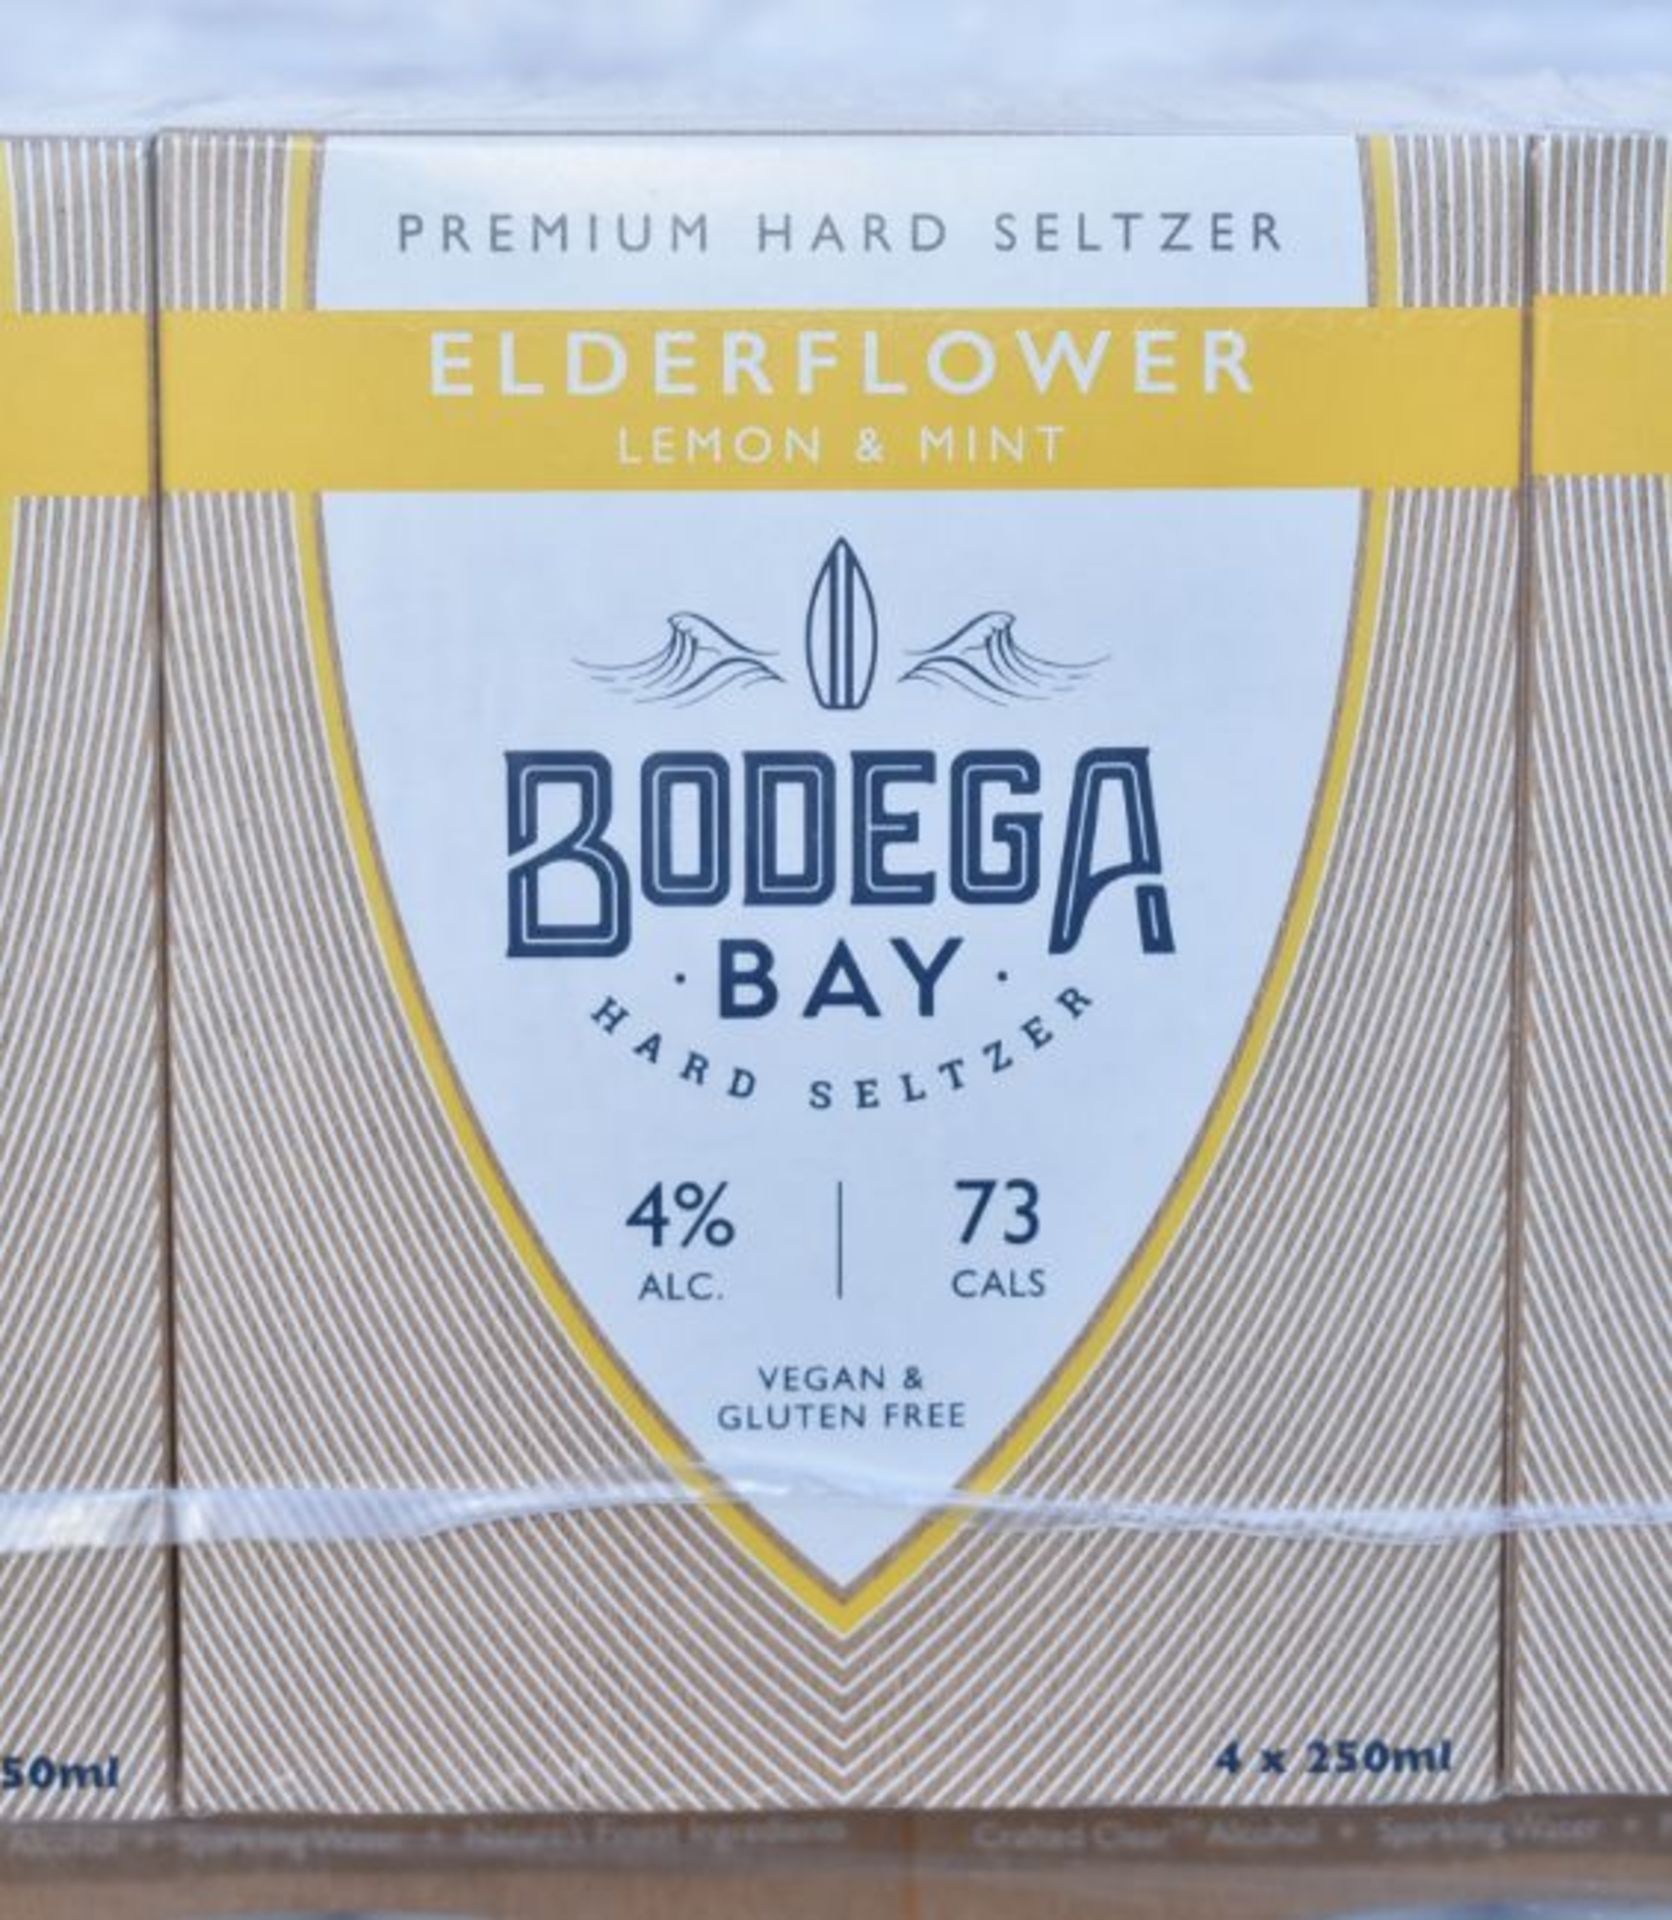 24 x Bodega Bay Hard Seltzer 250ml Alcoholic Sparkling Water Drinks - Elderflower Lemon & Mint - - Image 8 of 9